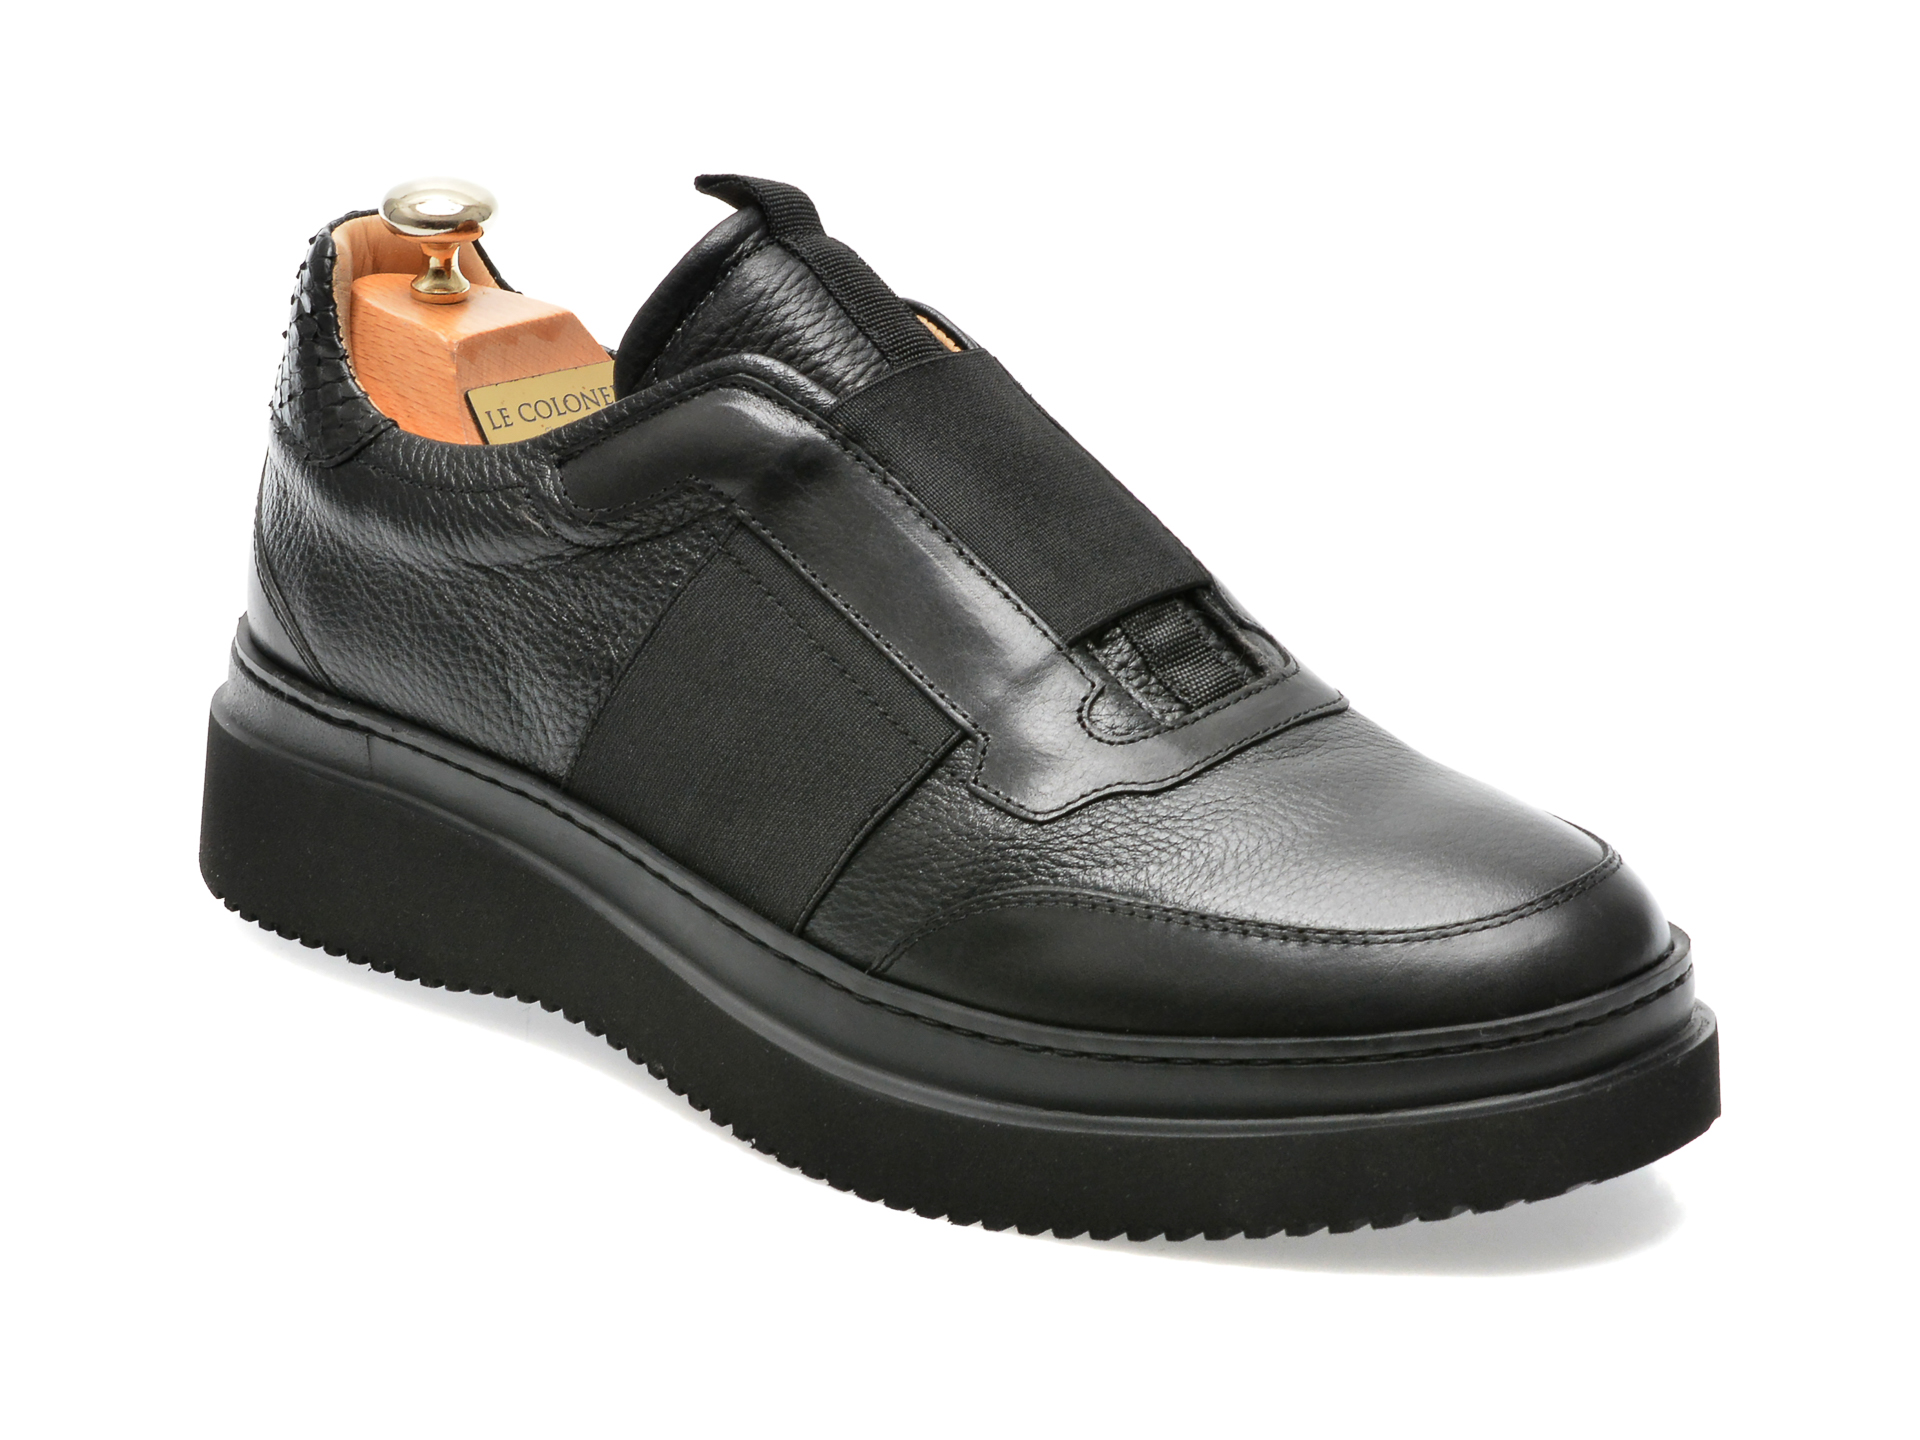 Pantofi LE COLONEL negri, 64833, din piele naturala Le Colonel